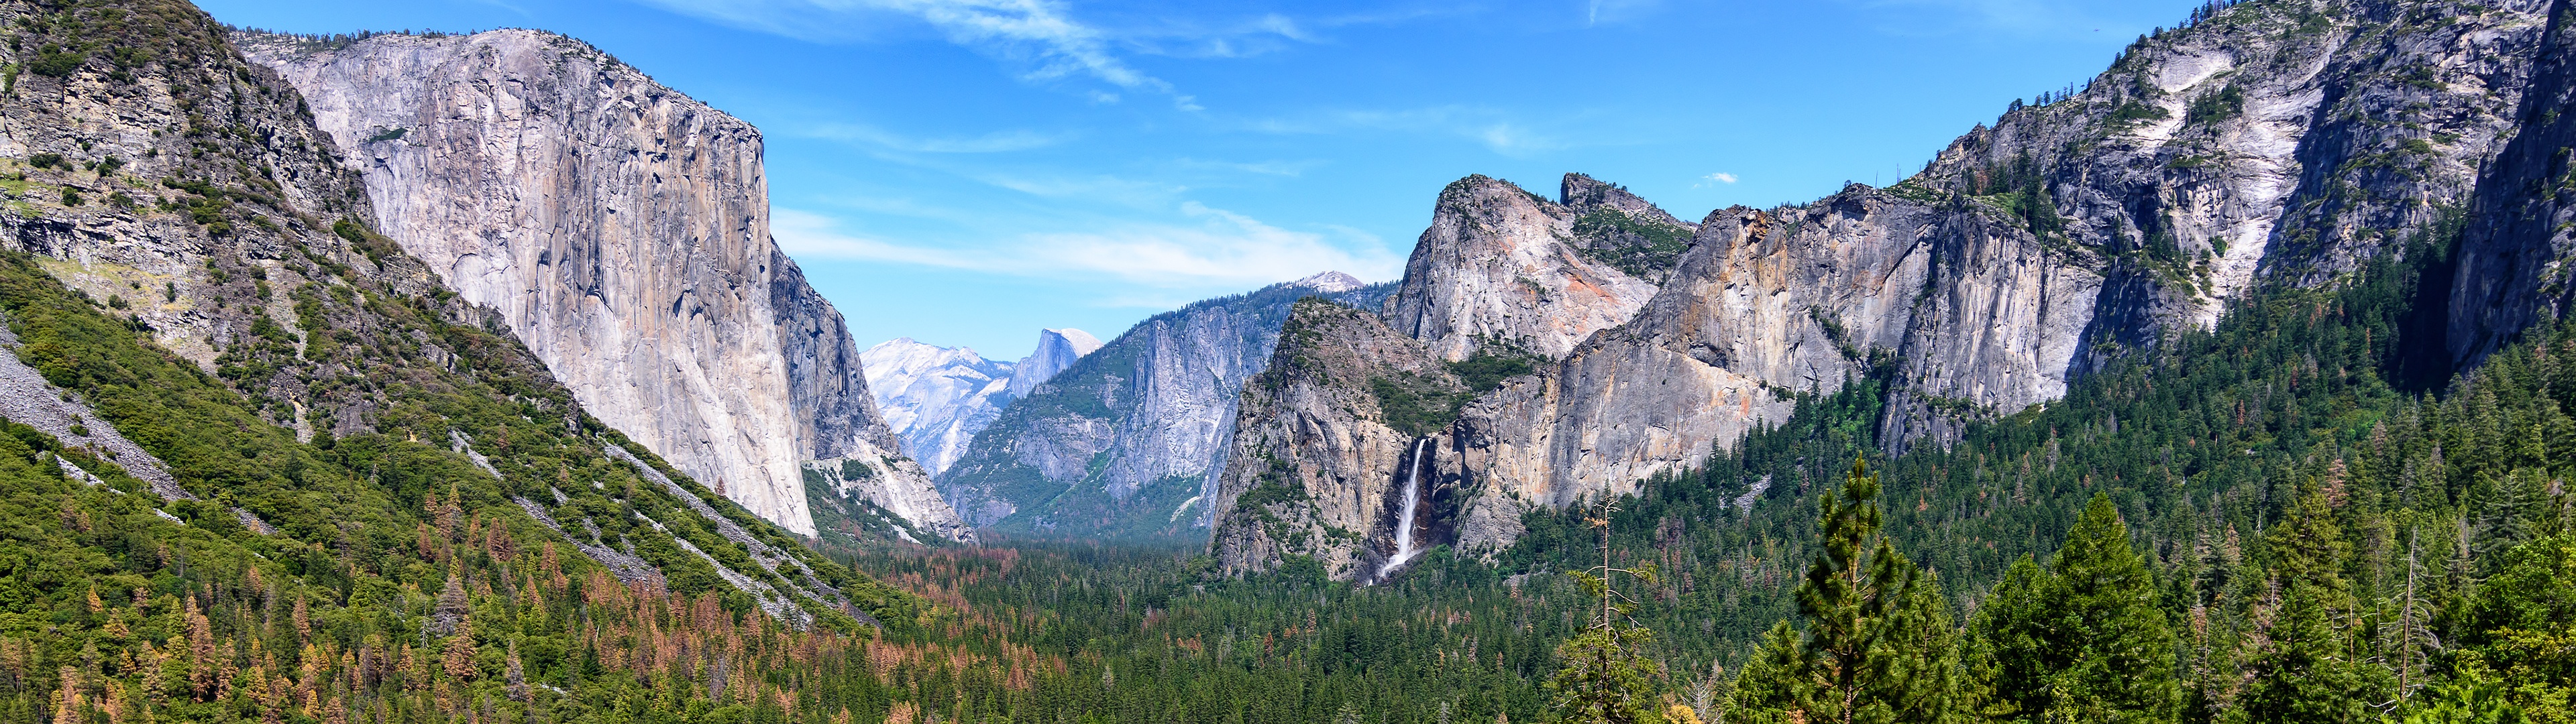 Nếu bạn yêu thích thiên nhiên hoang sơ và đặc biệt là vùng California, chắc chắn bạn không thể bỏ qua đồi núi Yosemite và ảnh nền 4K đầy hoành tráng này. Tận dụng sức mạnh của màn hình của bạn để tận hưởng cảm giác đứng giữa vườn quốc gia Yosemite, nhìn thấy đỉnh núi, dòng suối và những ánh mặt trời đỏ rực. Hãy tải ngay những bức ảnh nền Yosemite 4K này và hòa mình vào thiên nhiên tuyệt đẹp này!